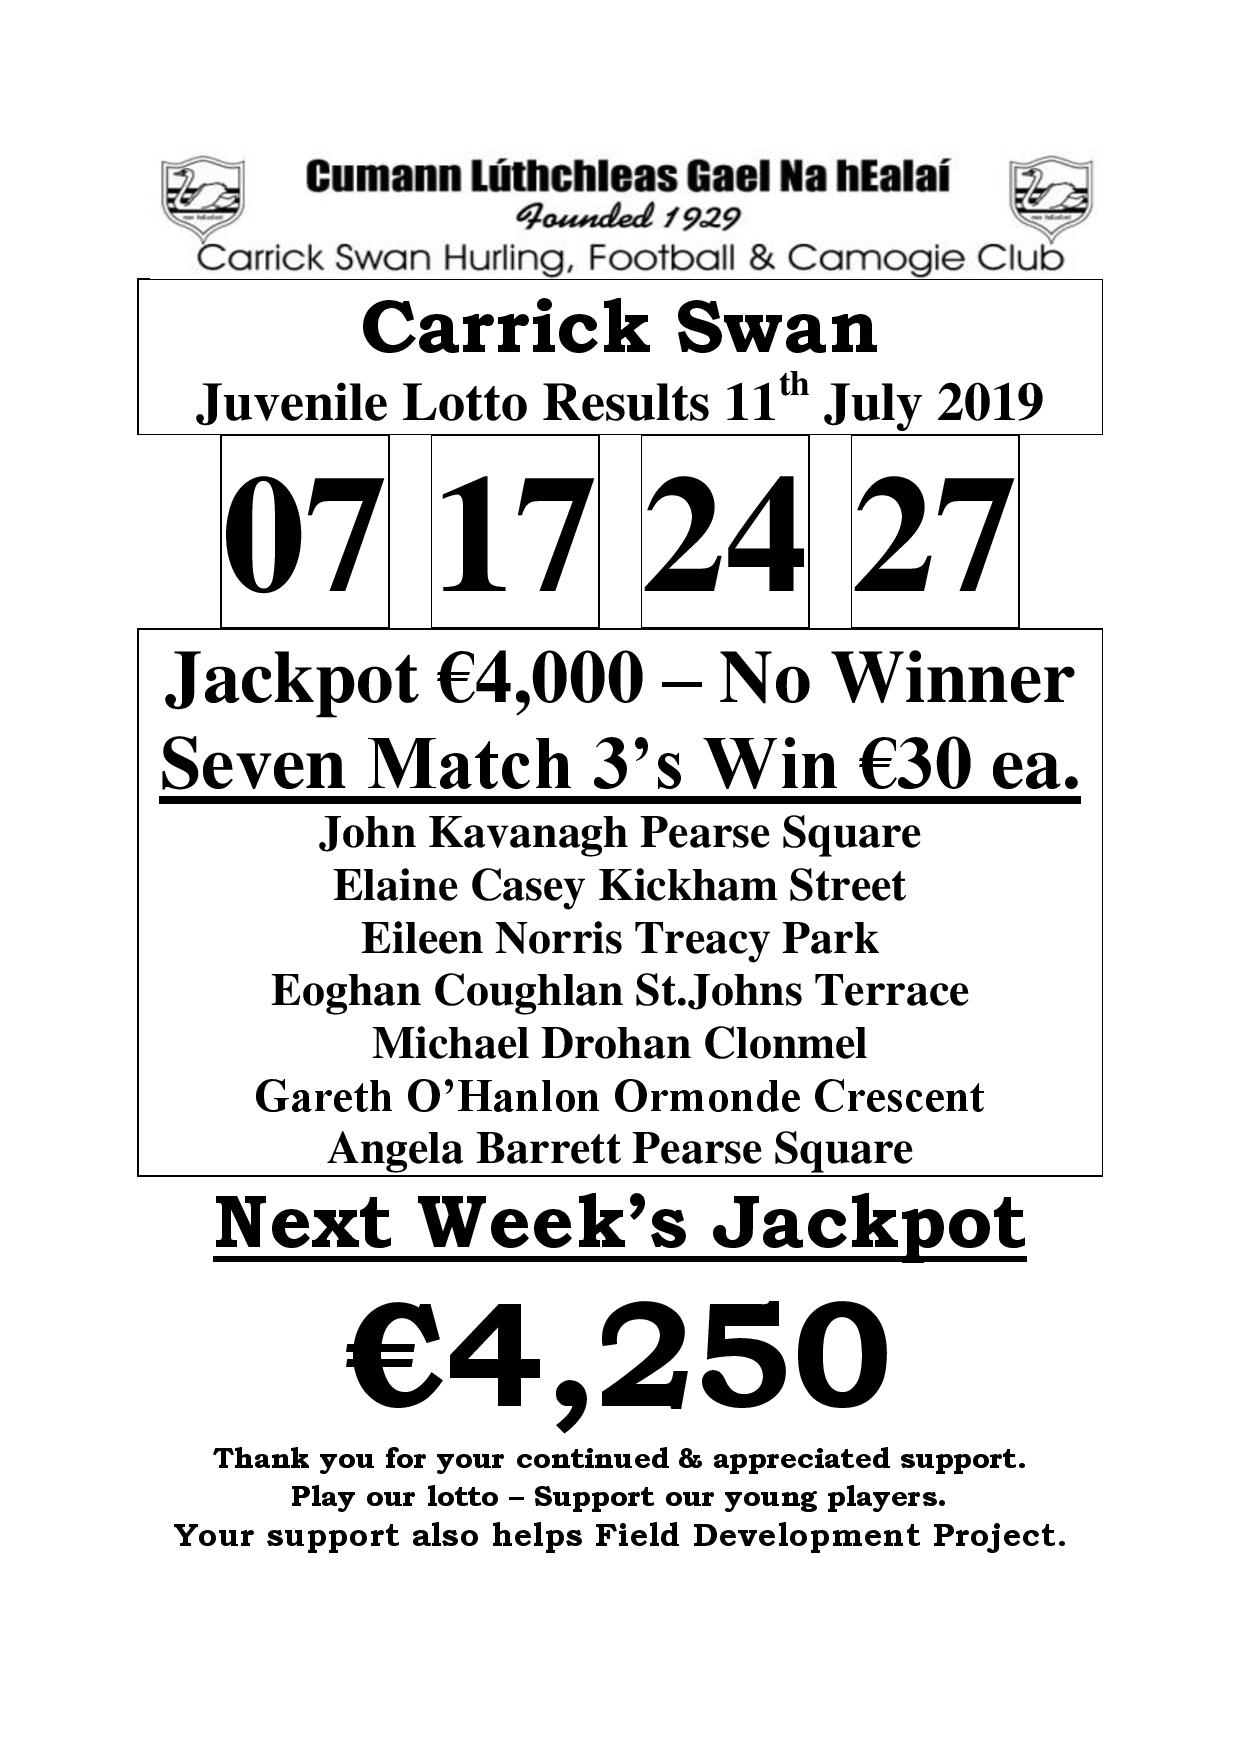 lotto jackpot 27 july 2019